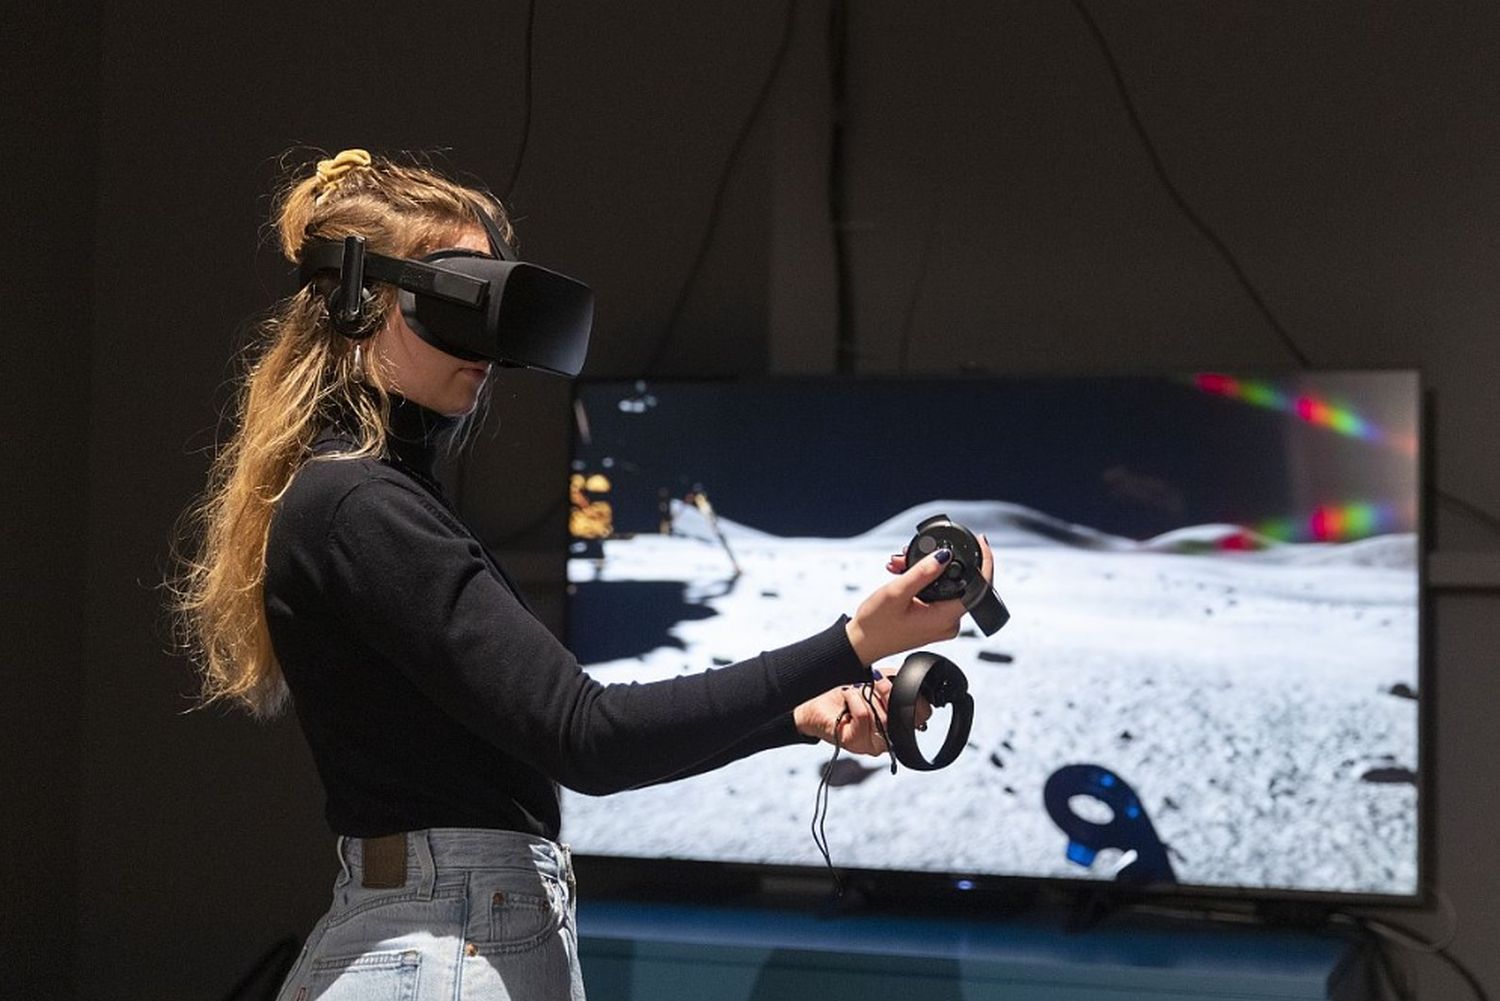 Eine Frau hat eine VR-Brille auf und hält zwei Controller in den Händen. Sie spielt eine Fahrt auf dem Mond nach.